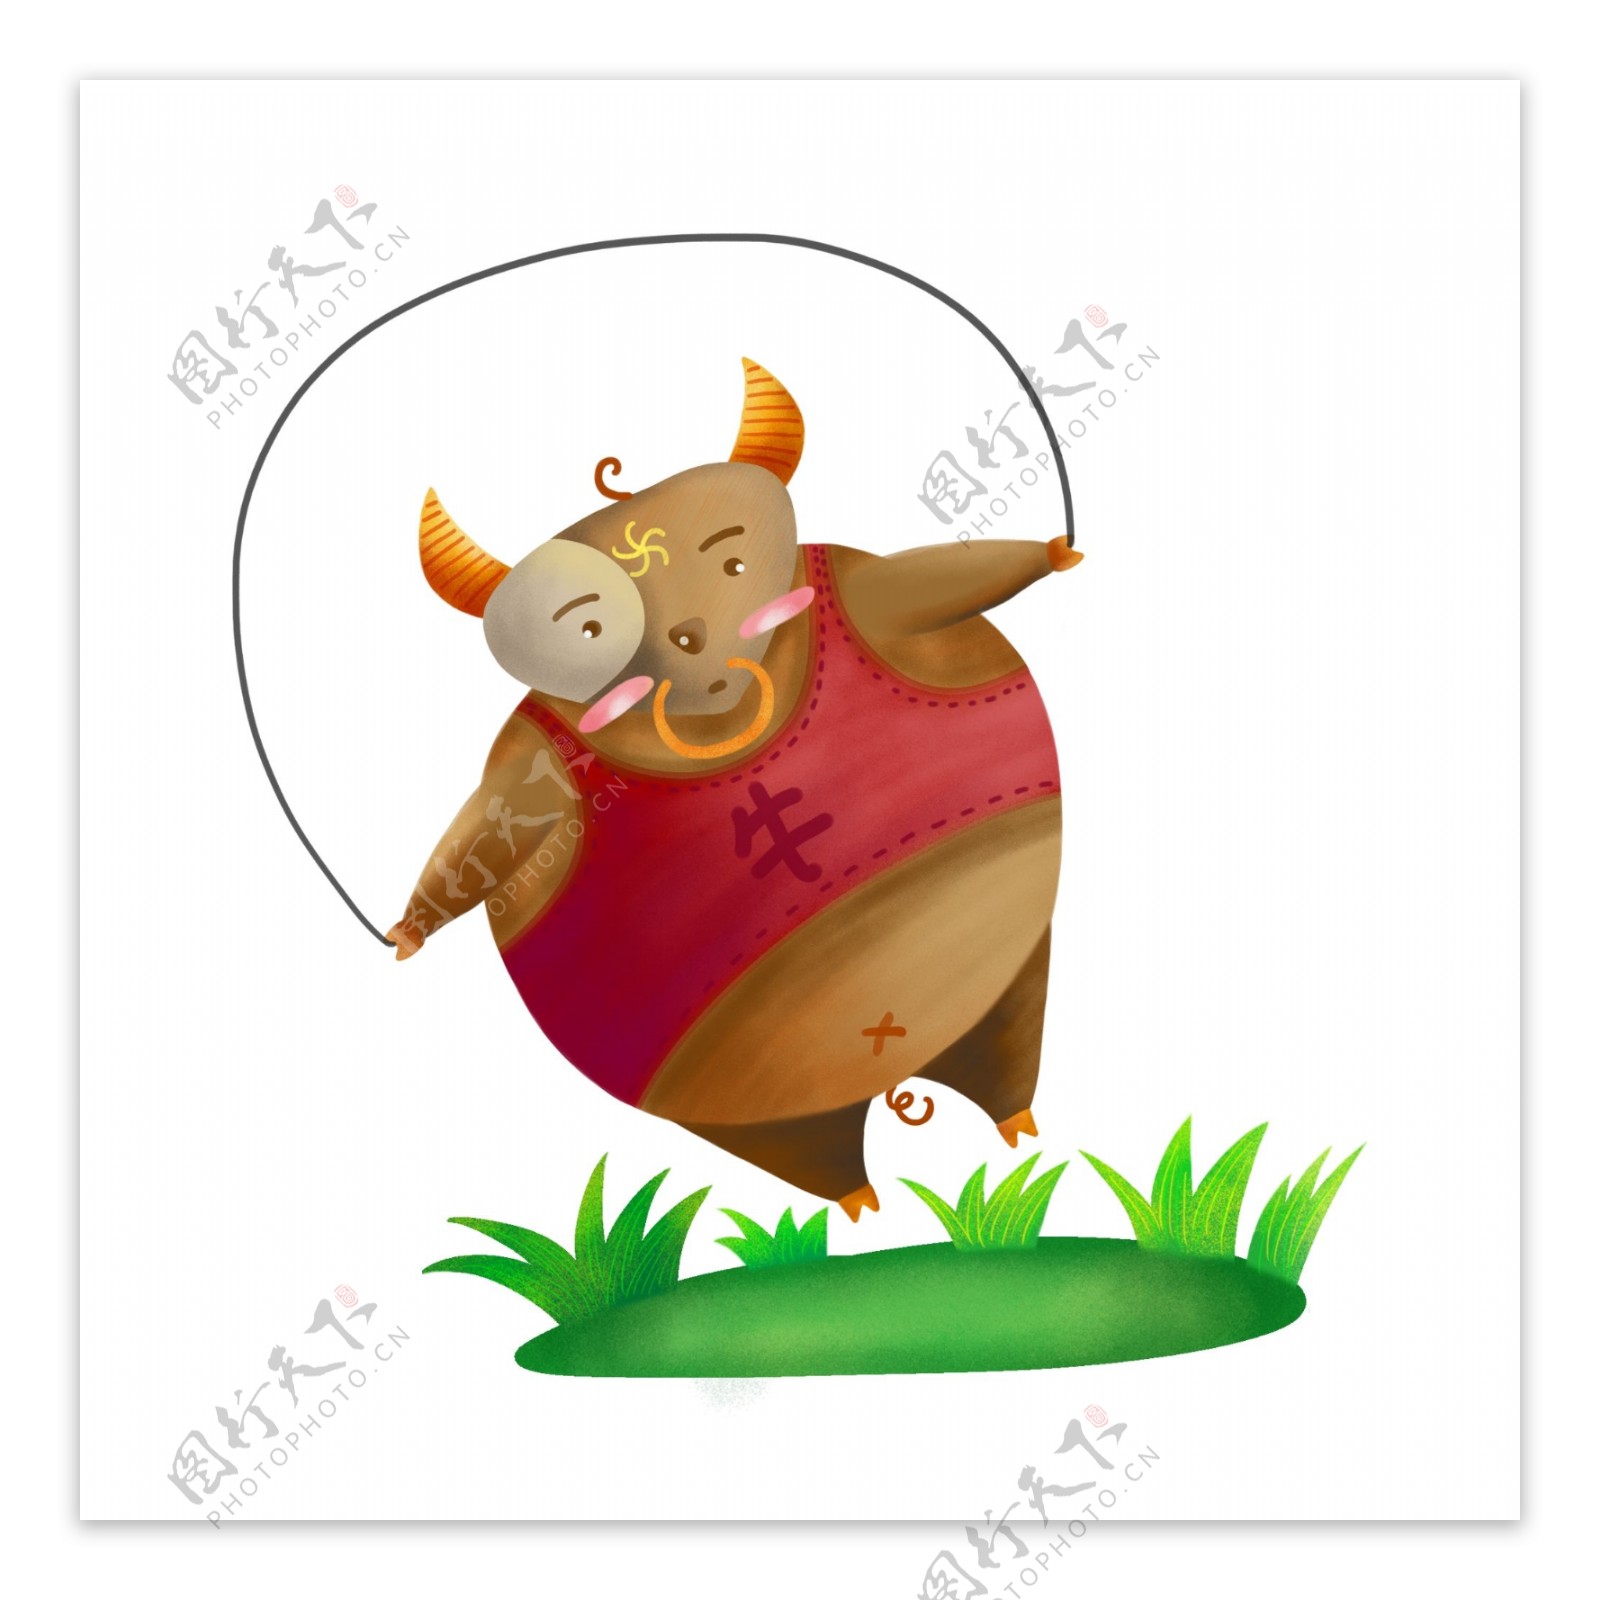 小胖牛可爱胖动物原创肌理插画设计元素